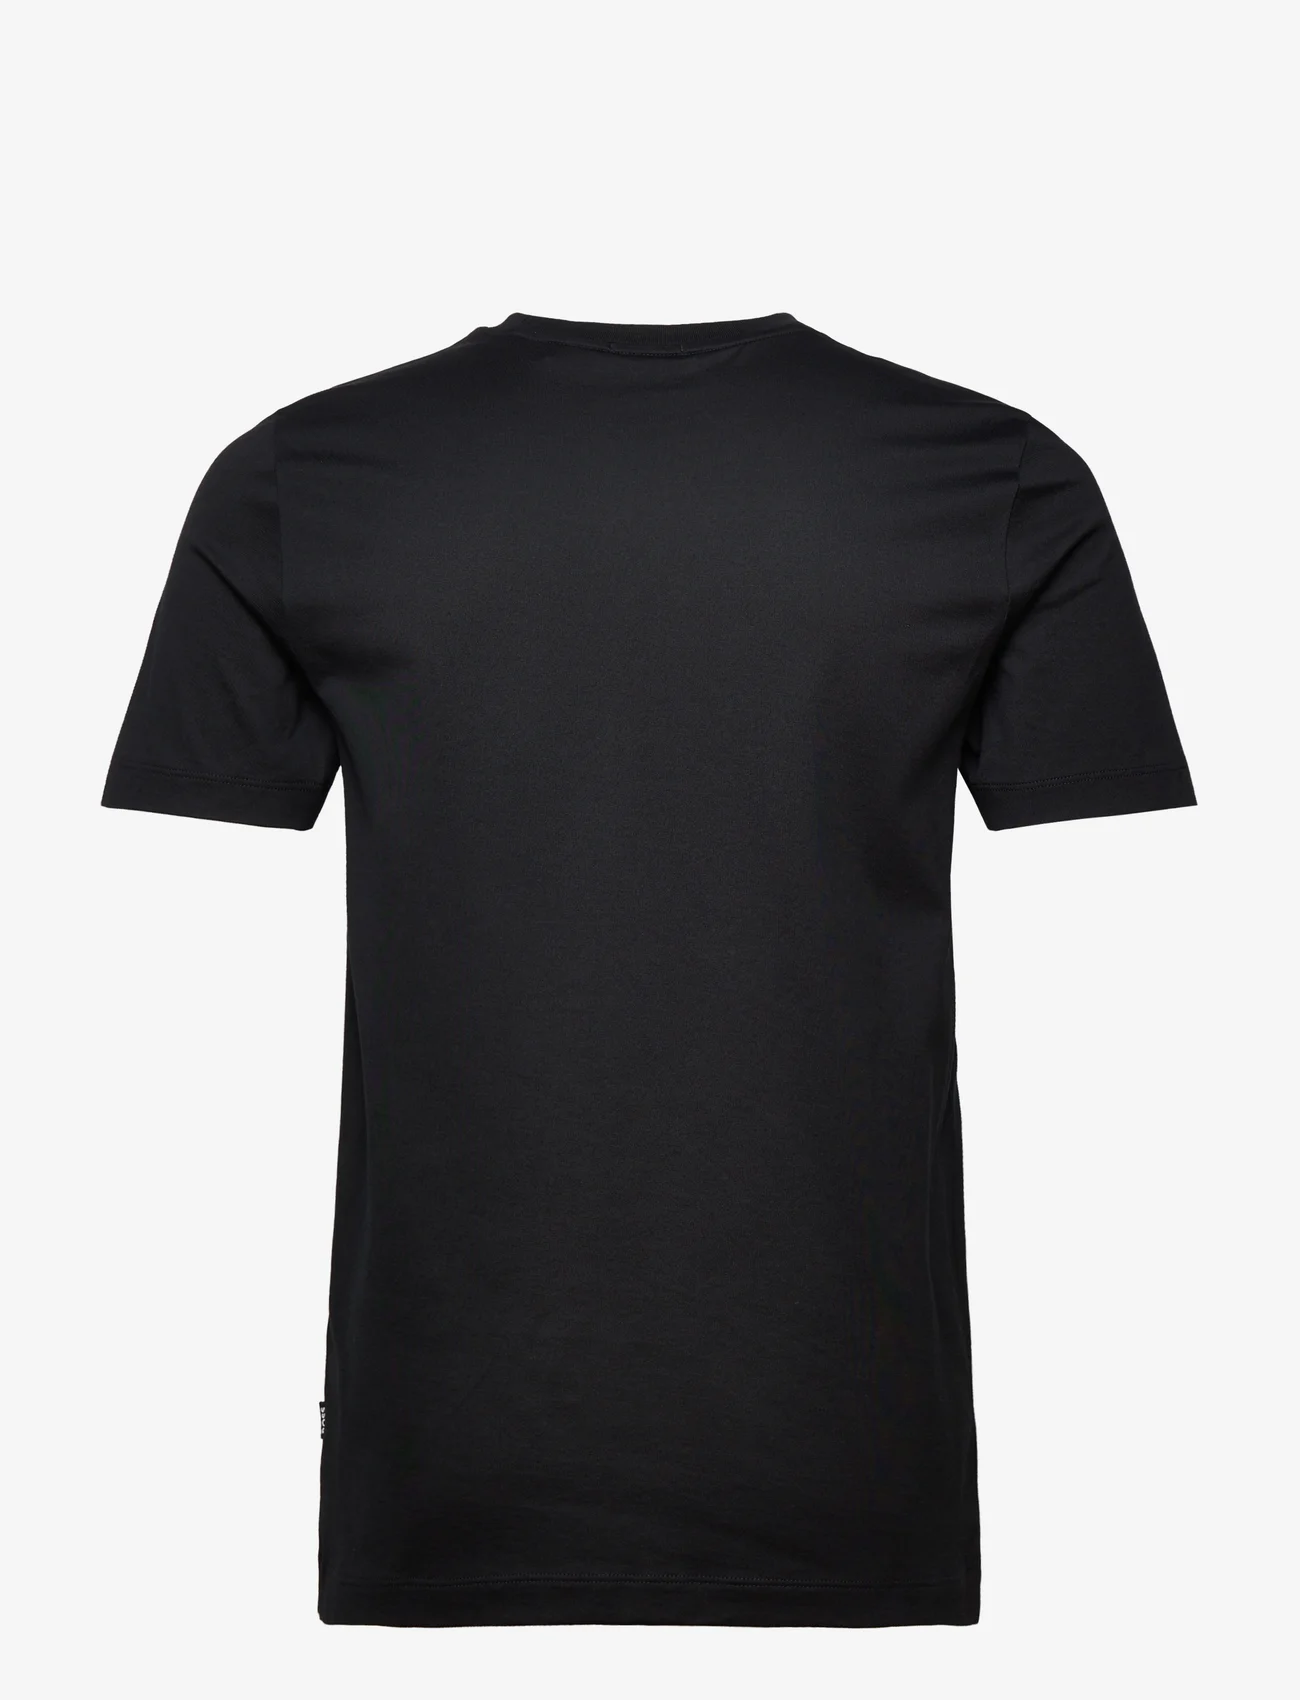 BOSS - Tessler 186 - kortærmede t-shirts - black - 1